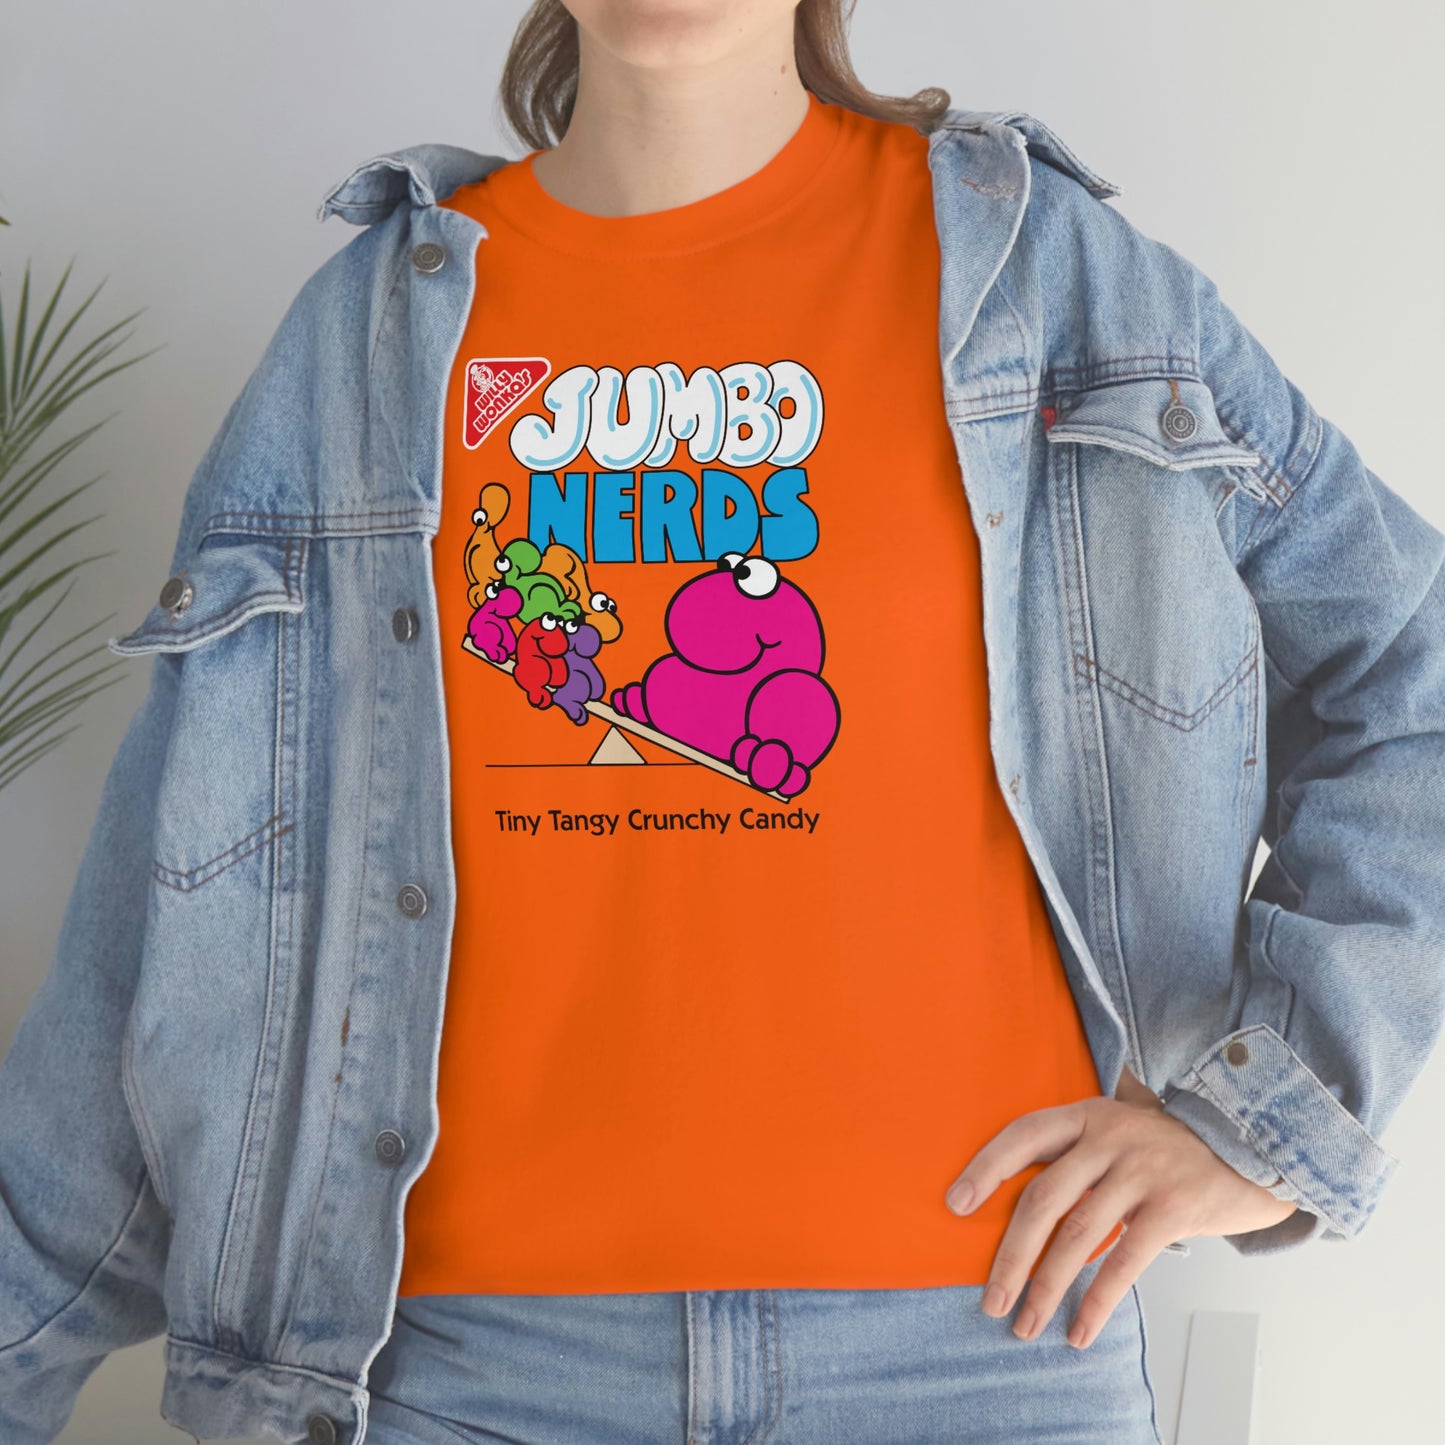 Jumbo Nerds T-Shirt